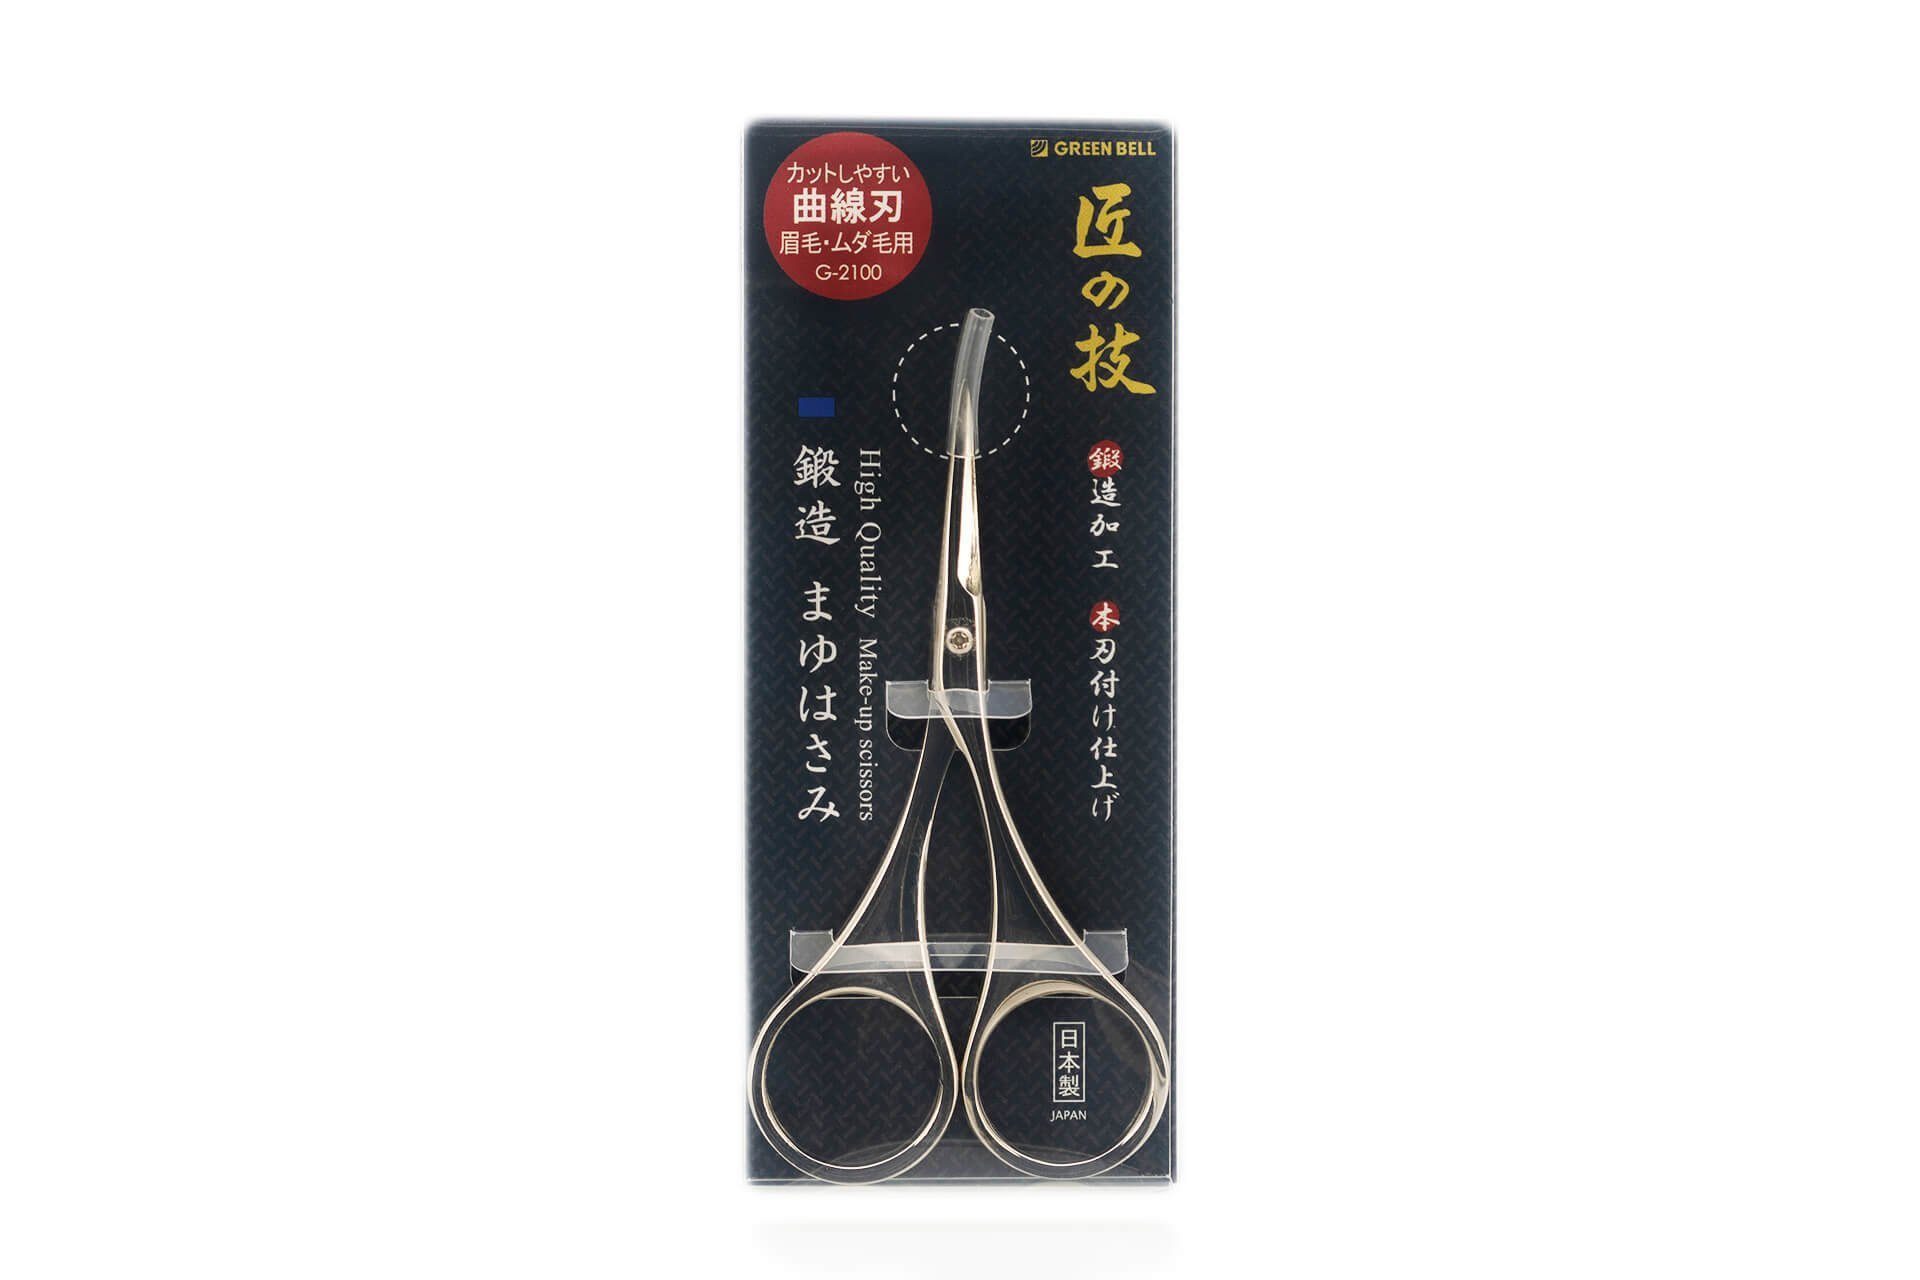 geschmiedet handgeschärftes Qualitätsprodukt Augenbrauenschere Seki EDGE G-2100 cm, aus Japan Augenbrauenschere 9.3x5x0.8